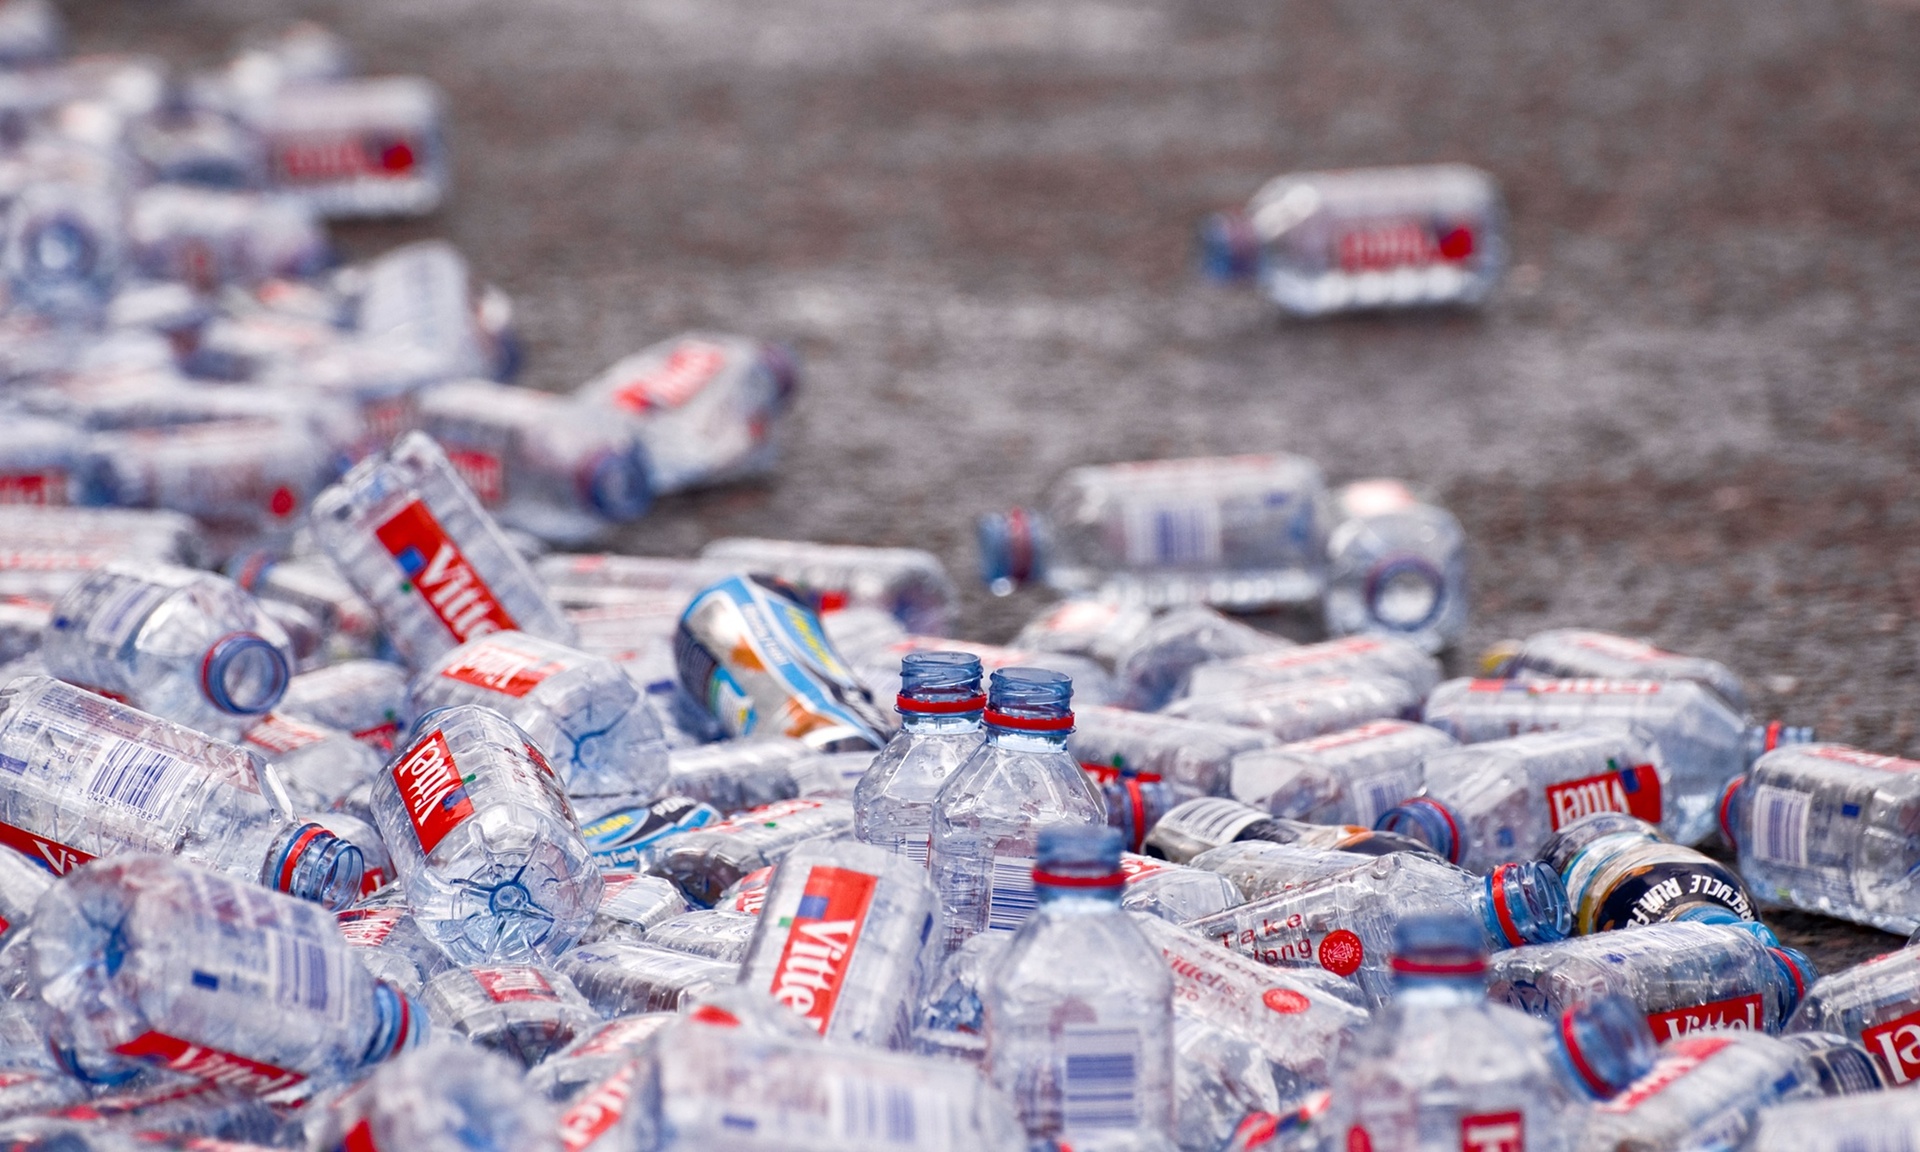 Botellas de plástico abandonadas en el suelo después de la maratón de Londres, fotos de Tracy Gunn / Alamy